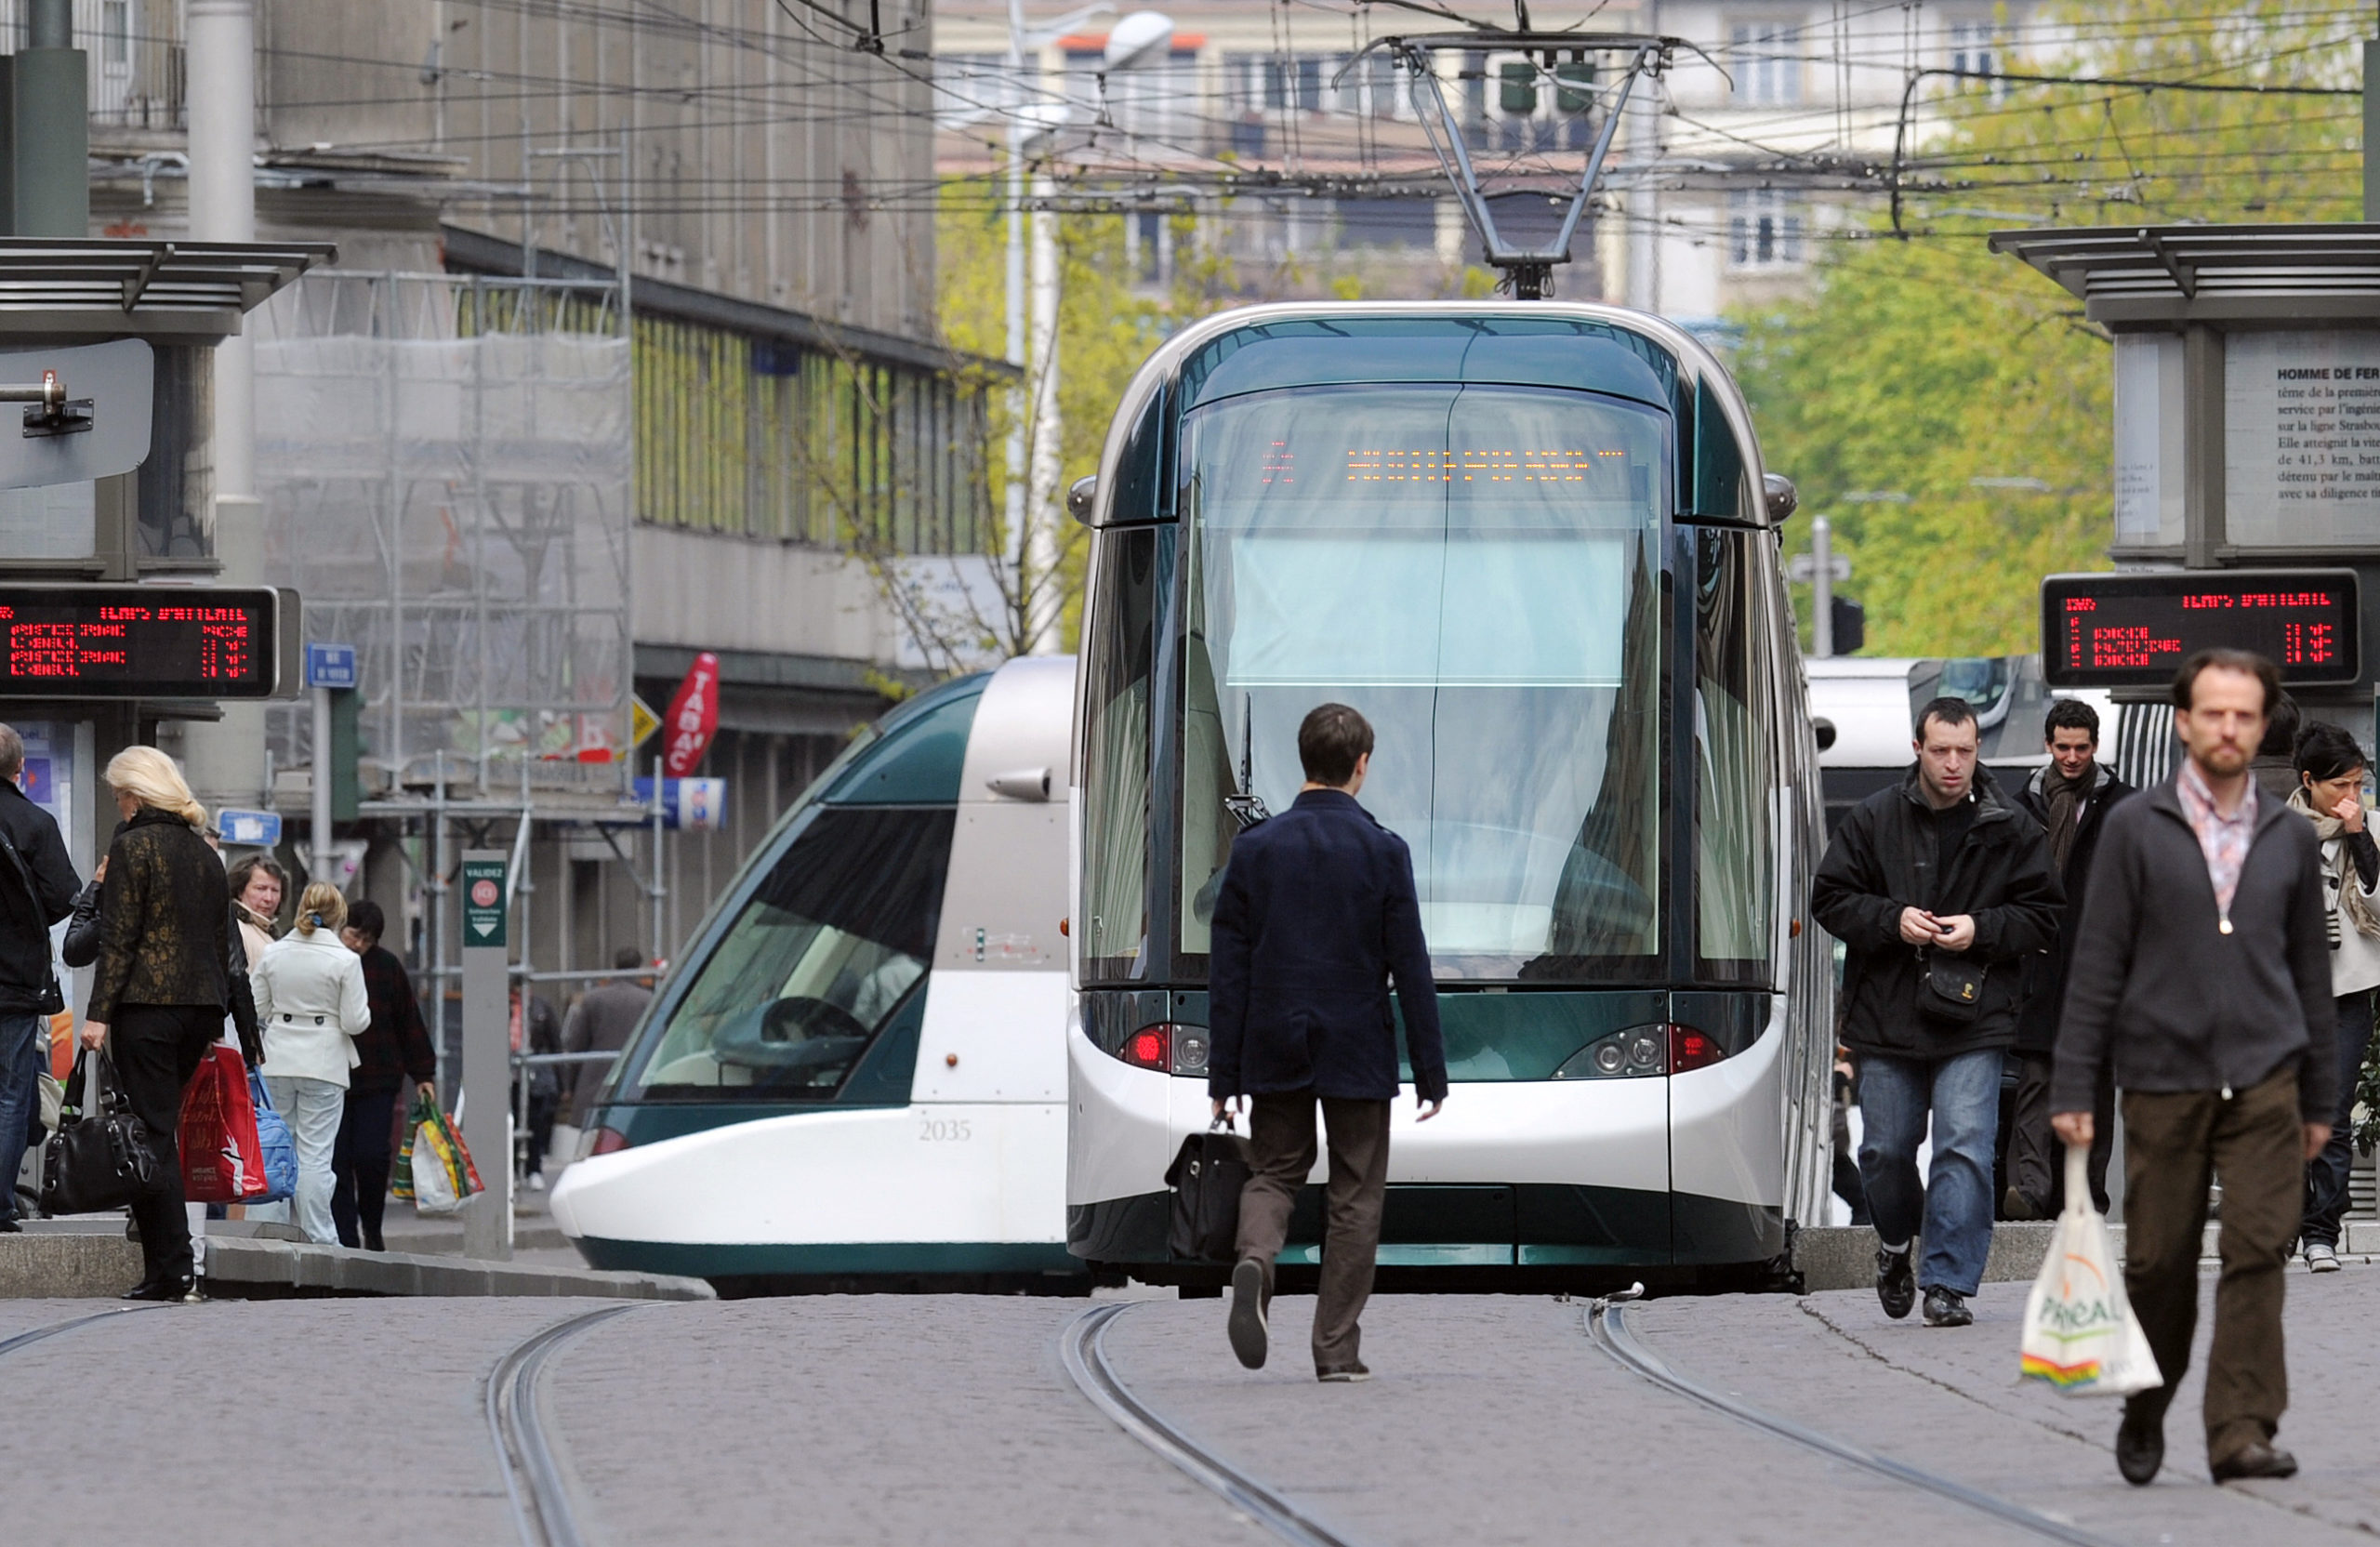 Transports publics gratuits à Montpellier et Strasbourg